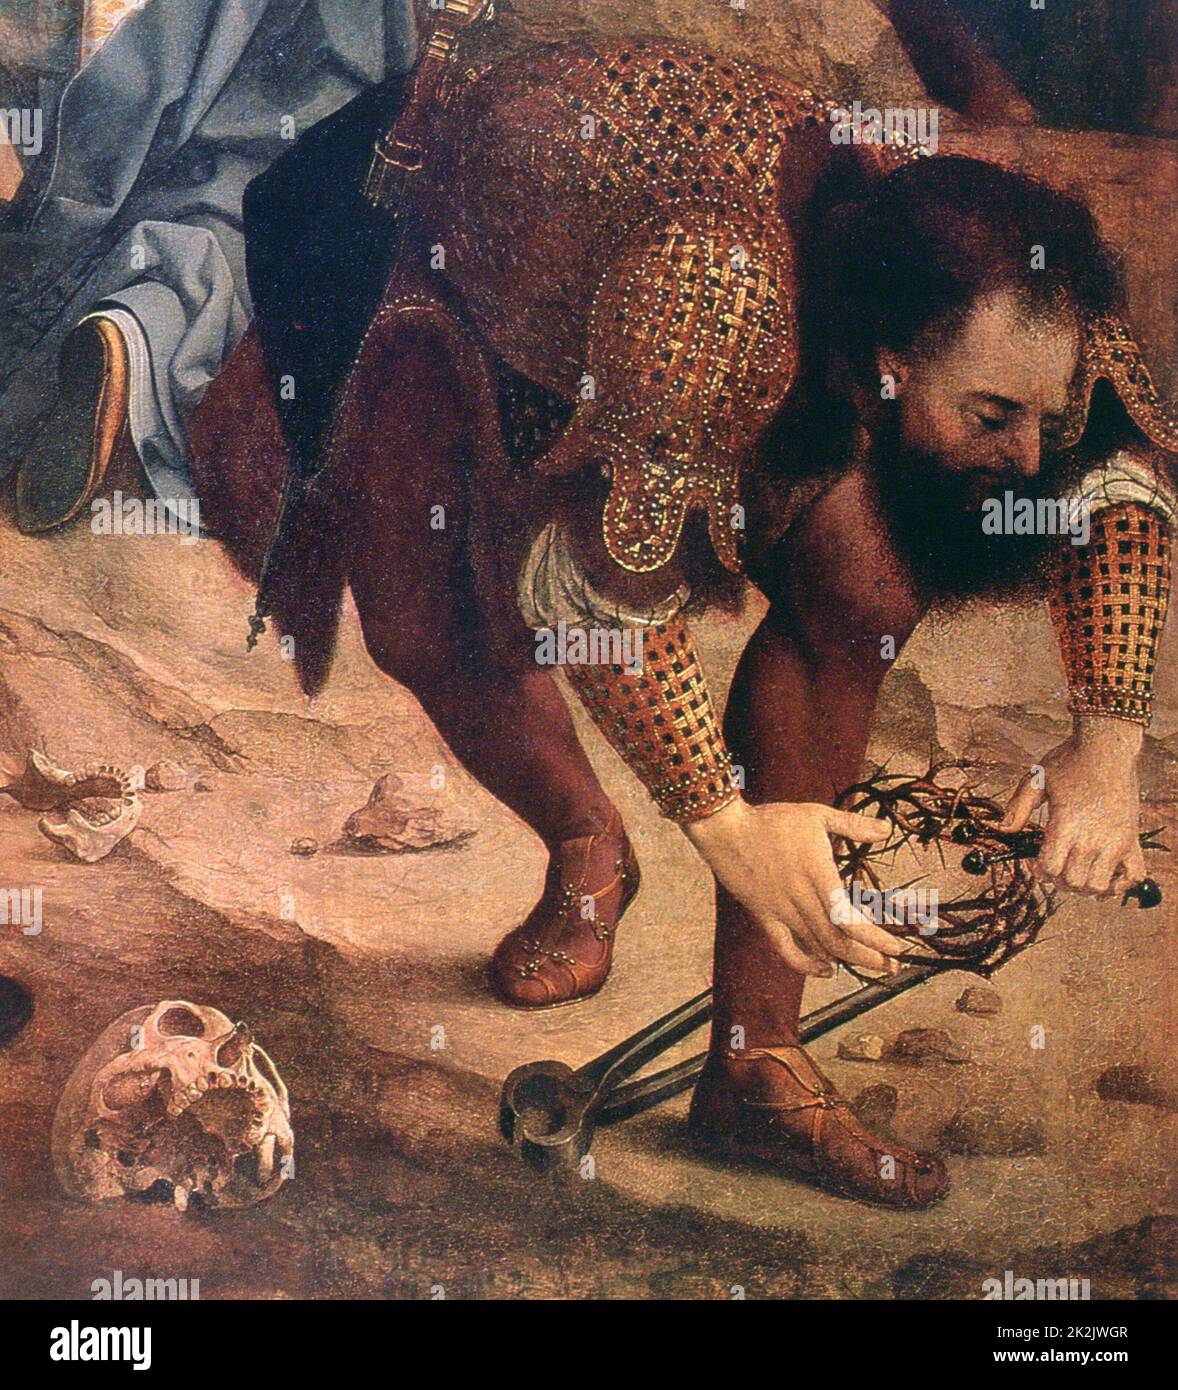 Jan Gossaert, connu sous le nom d'école hollandaise Mabuse Descent de la Croix (détail de la partie inférieure droite) c.1520 huile sur toile (141 x 106,5 cm) Saint-Pétersbourg, Musée de l'Ermitage Banque D'Images